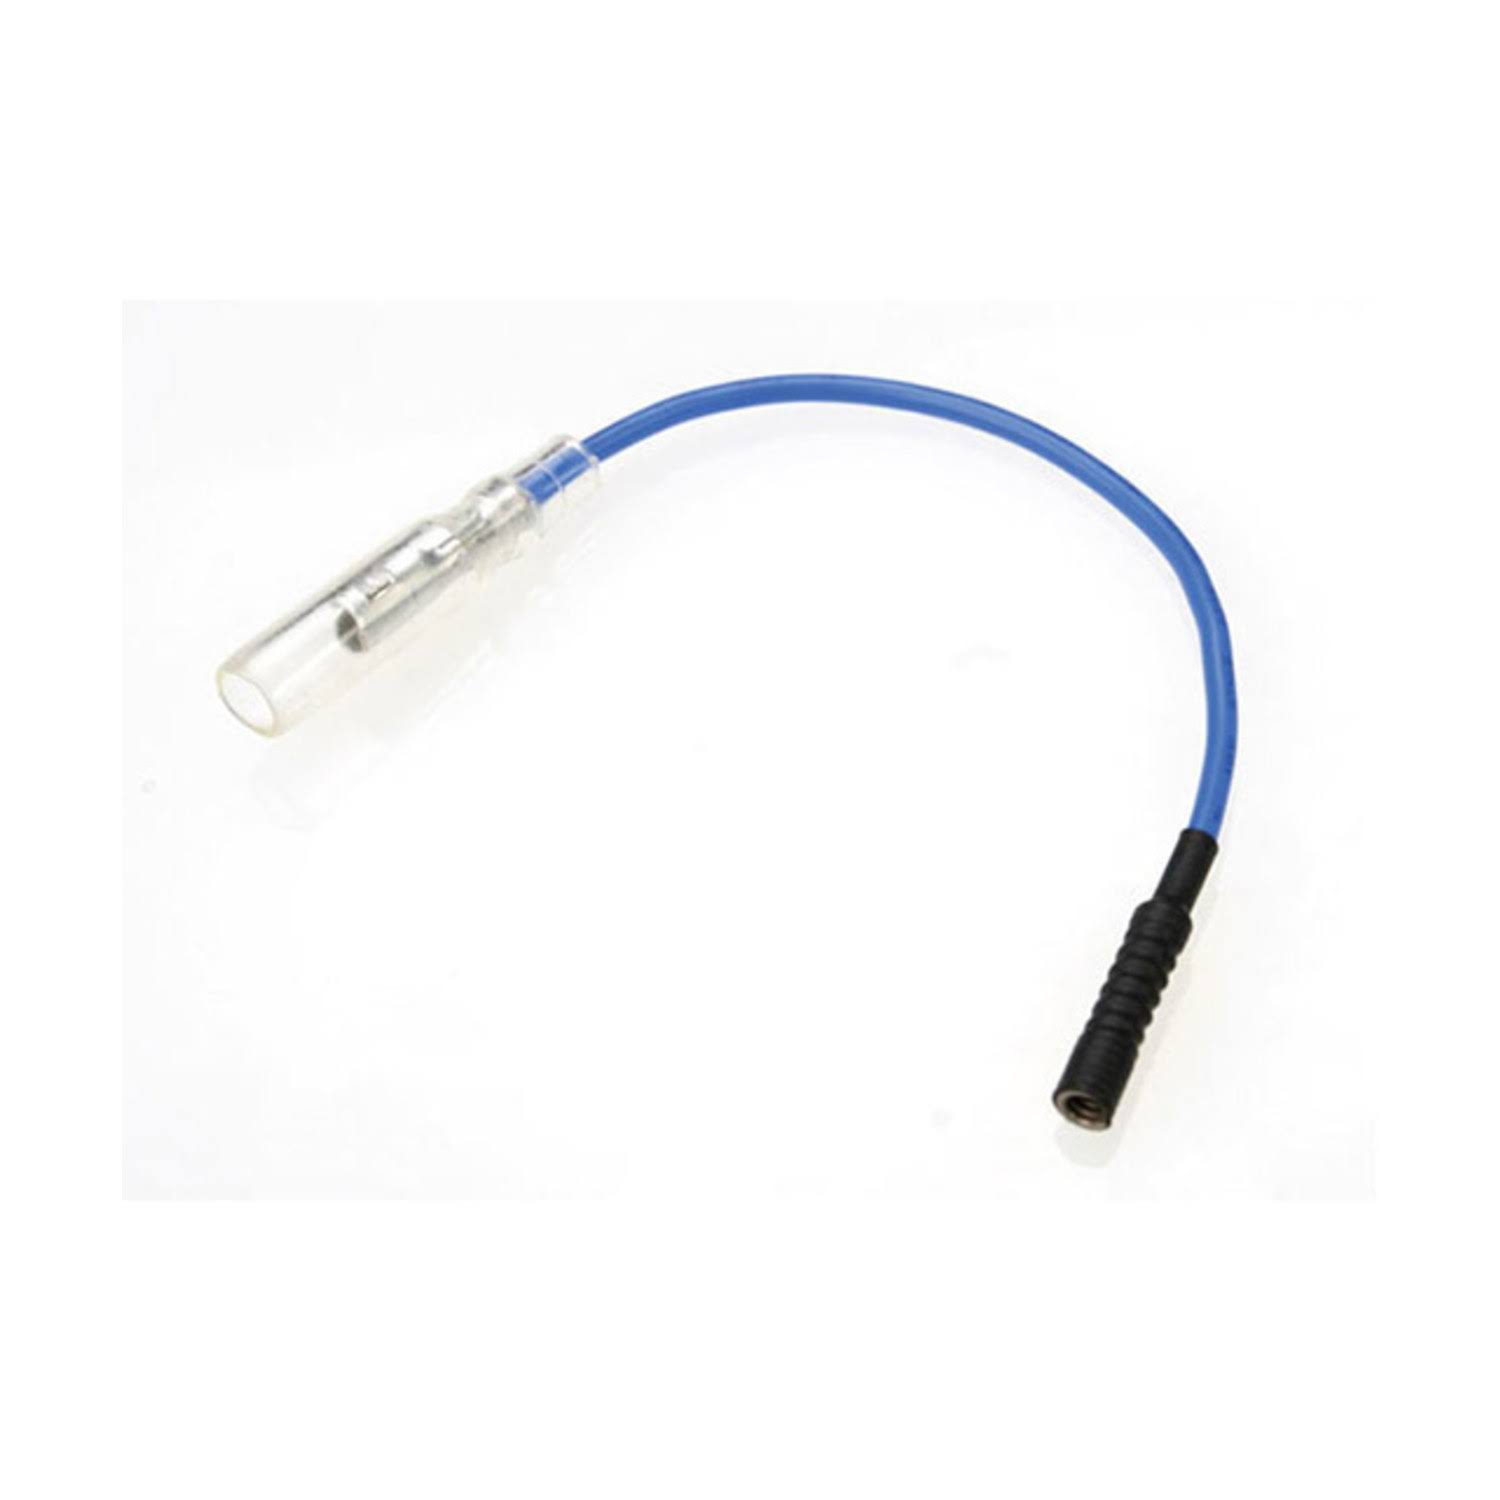 Traxxas T Maxx Glow Plug Lead Wire - Blue